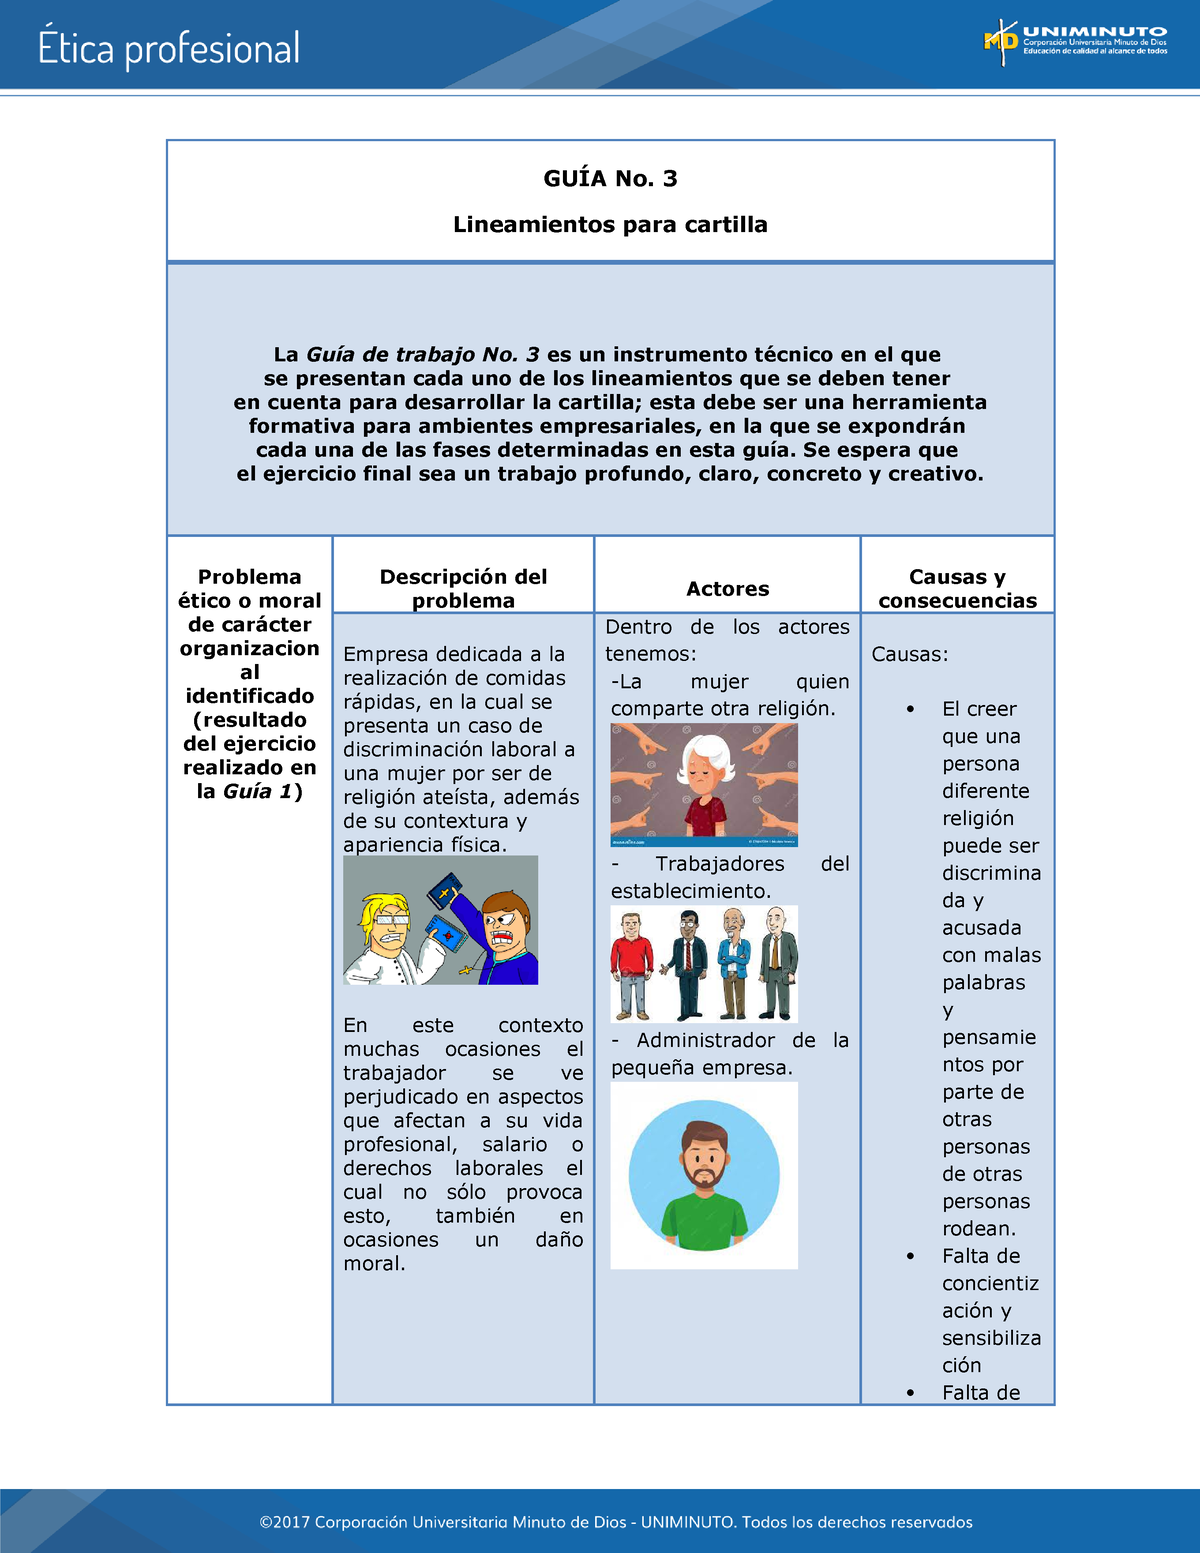 Etica Profesional Trabajo N8 GuÍa No 3 Lineamientos Para Cartilla La Guía De Trabajo No 3 Es 5395